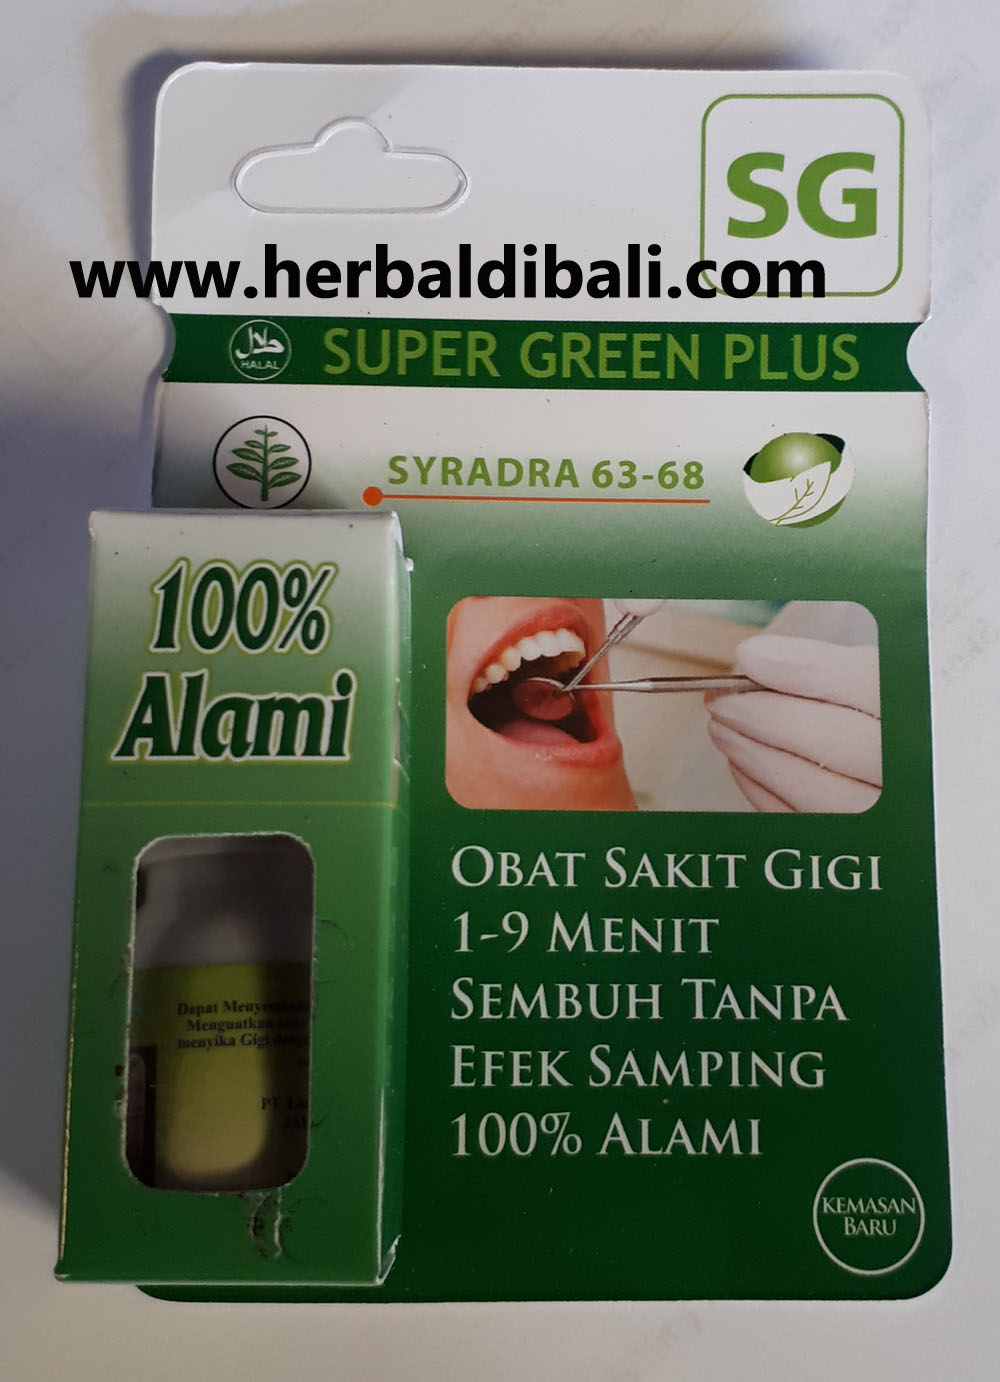 Jual Super Green Plus SG Obat Sakit Gigi di Denpasar Bali 